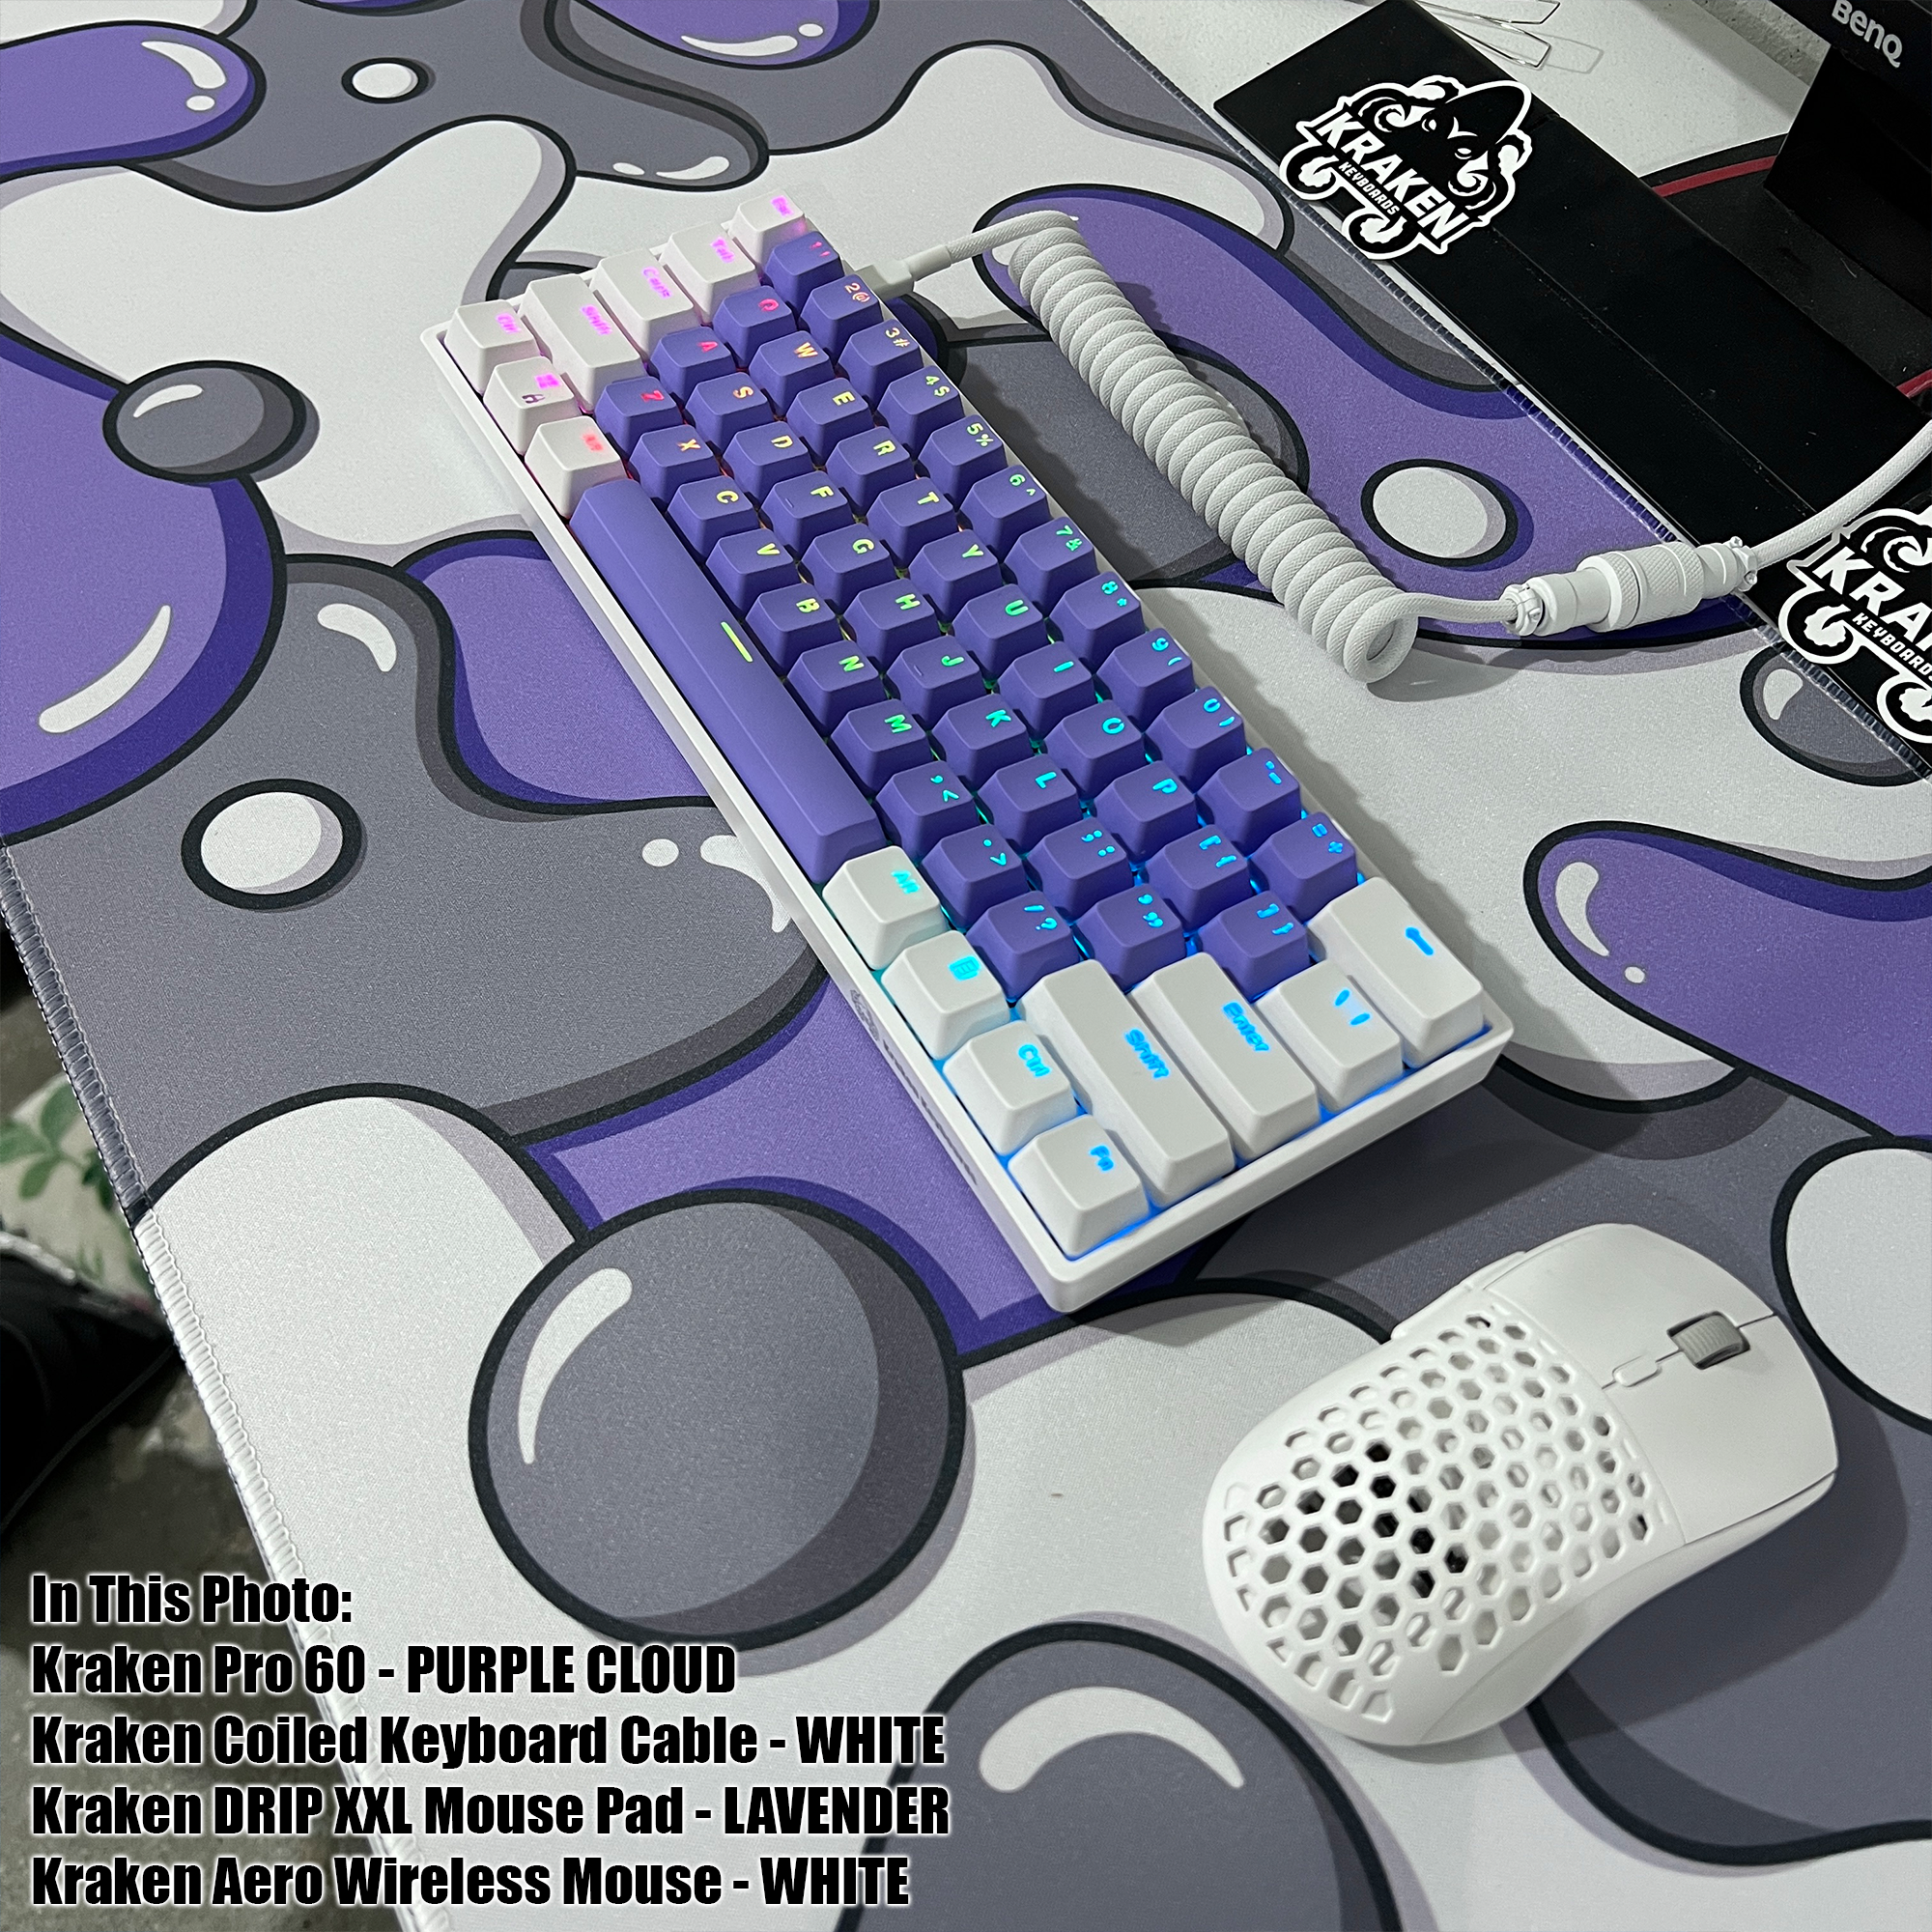 BLACK LOTUS Edition, Kraken Pro 60% Mechanical Keyboard